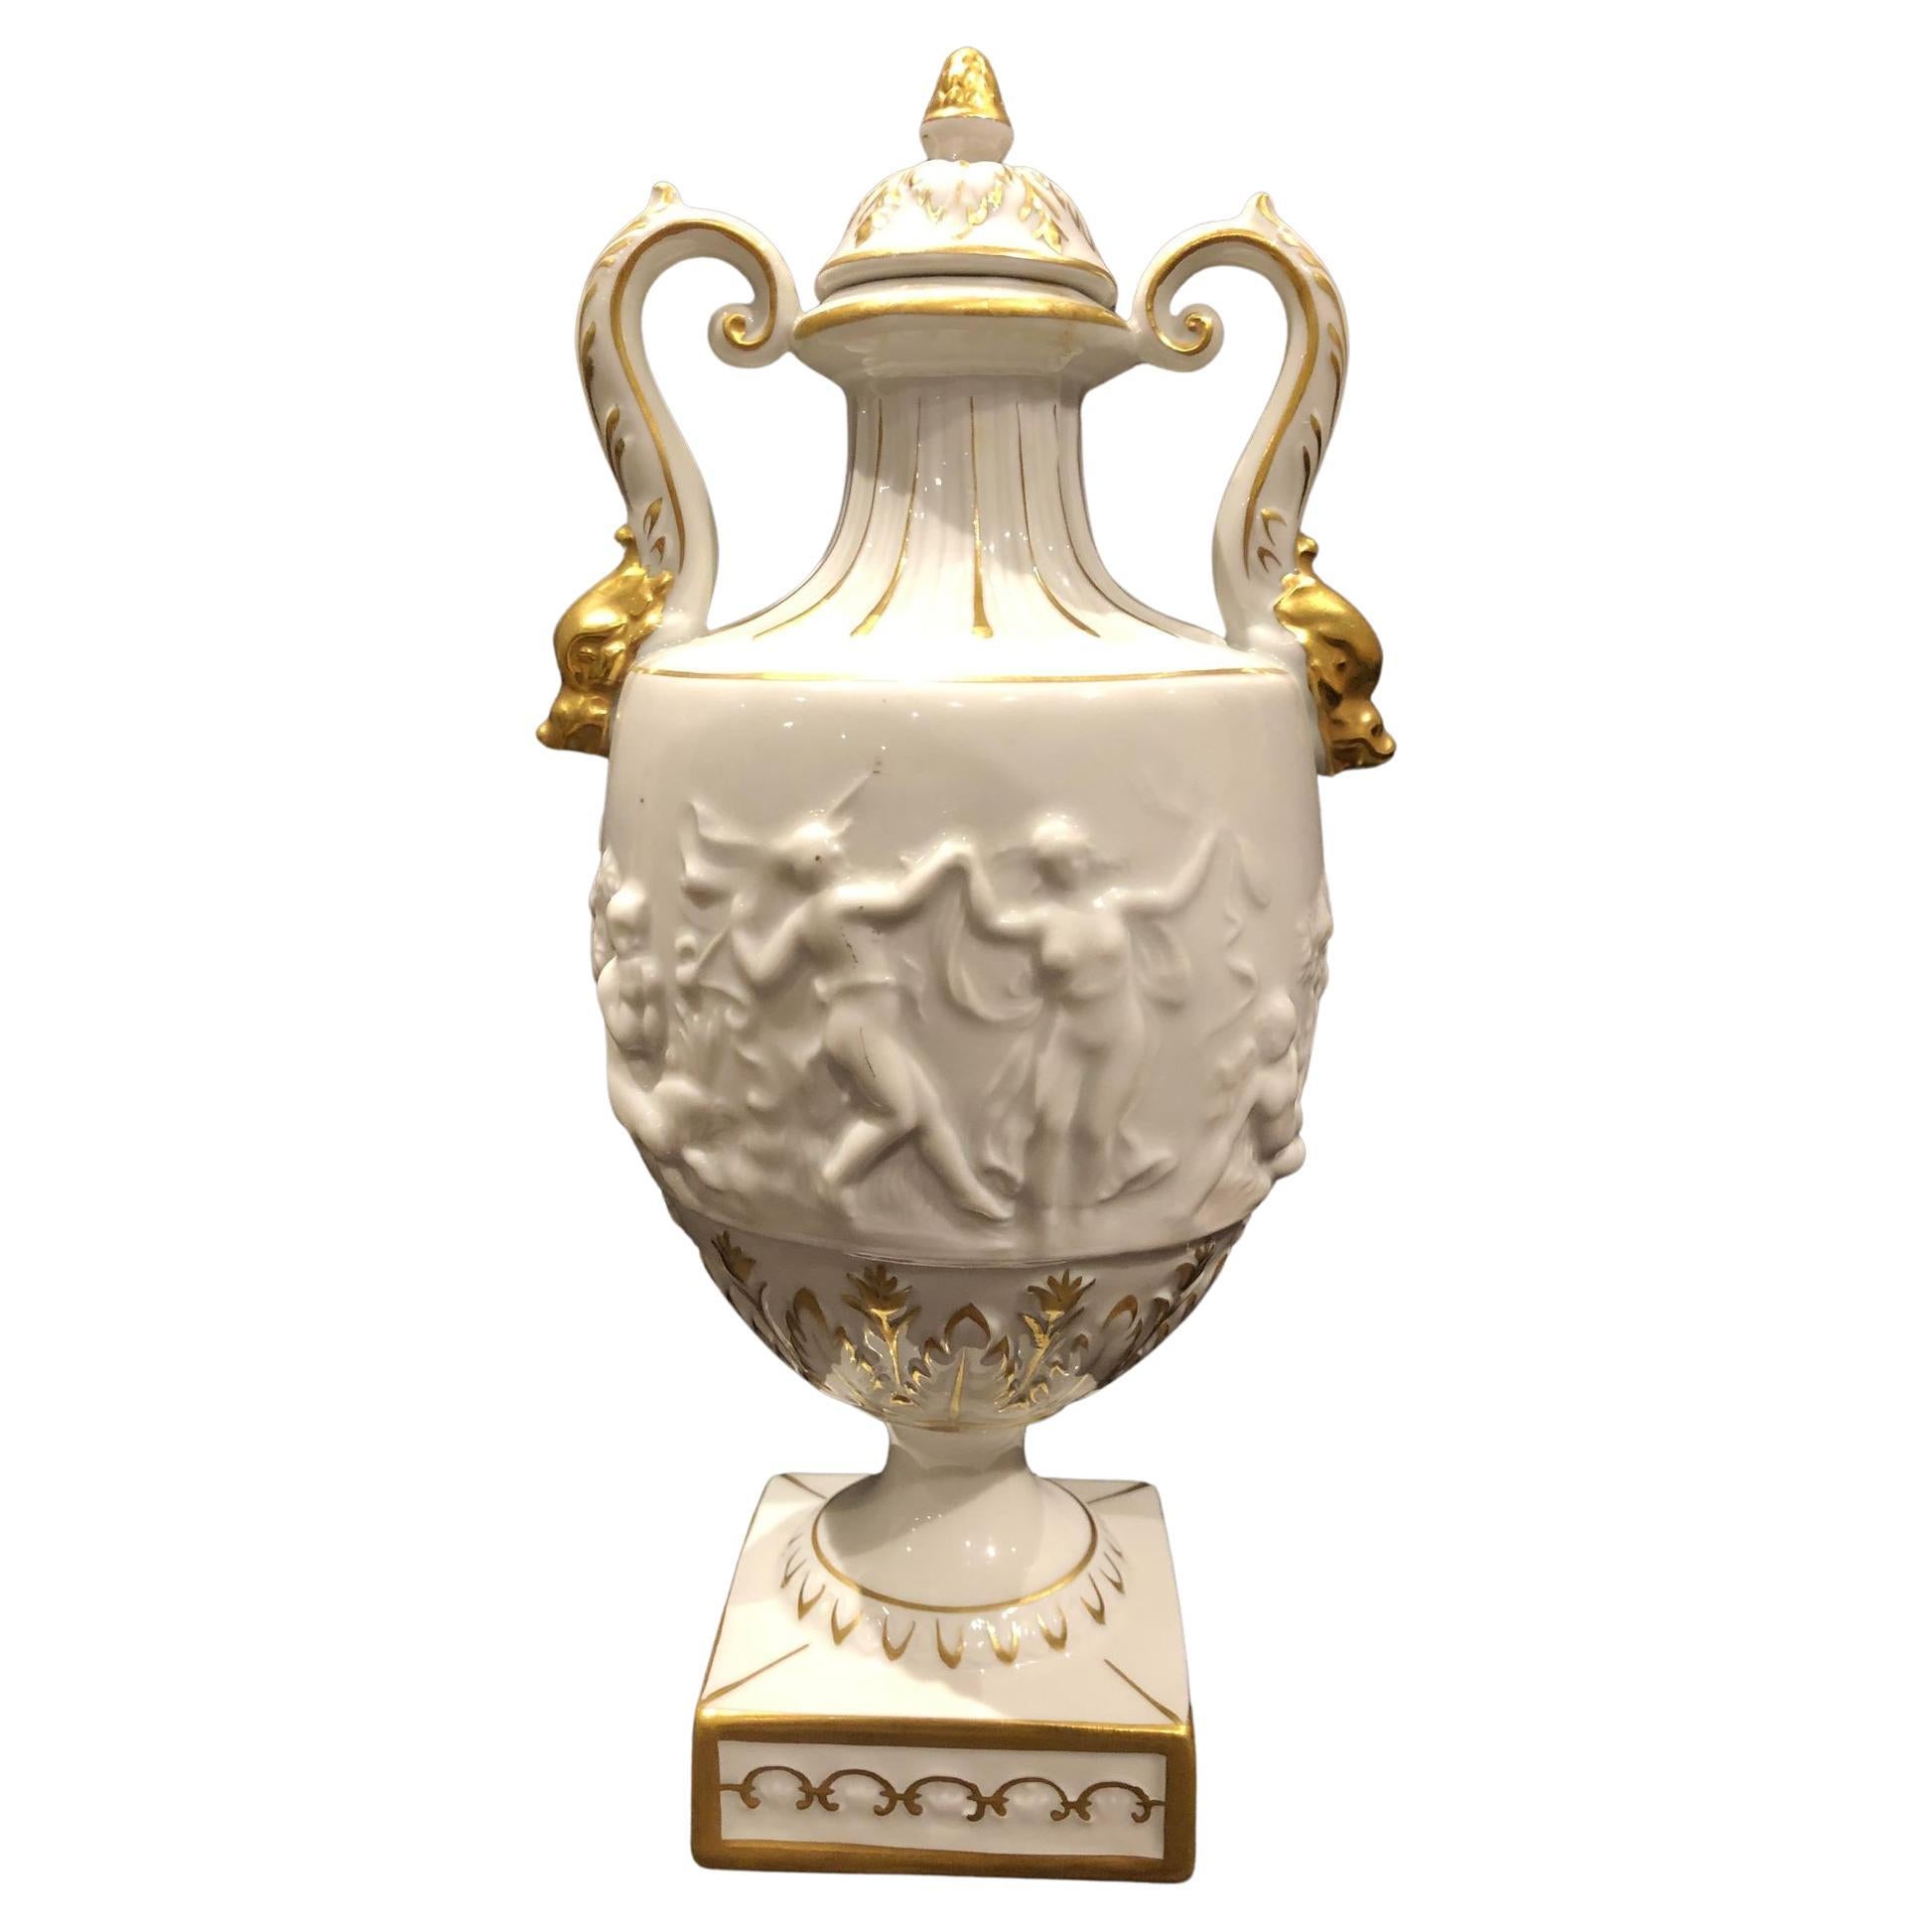 Porzellanmanufactur Plaue Porcelain Vase For Sale